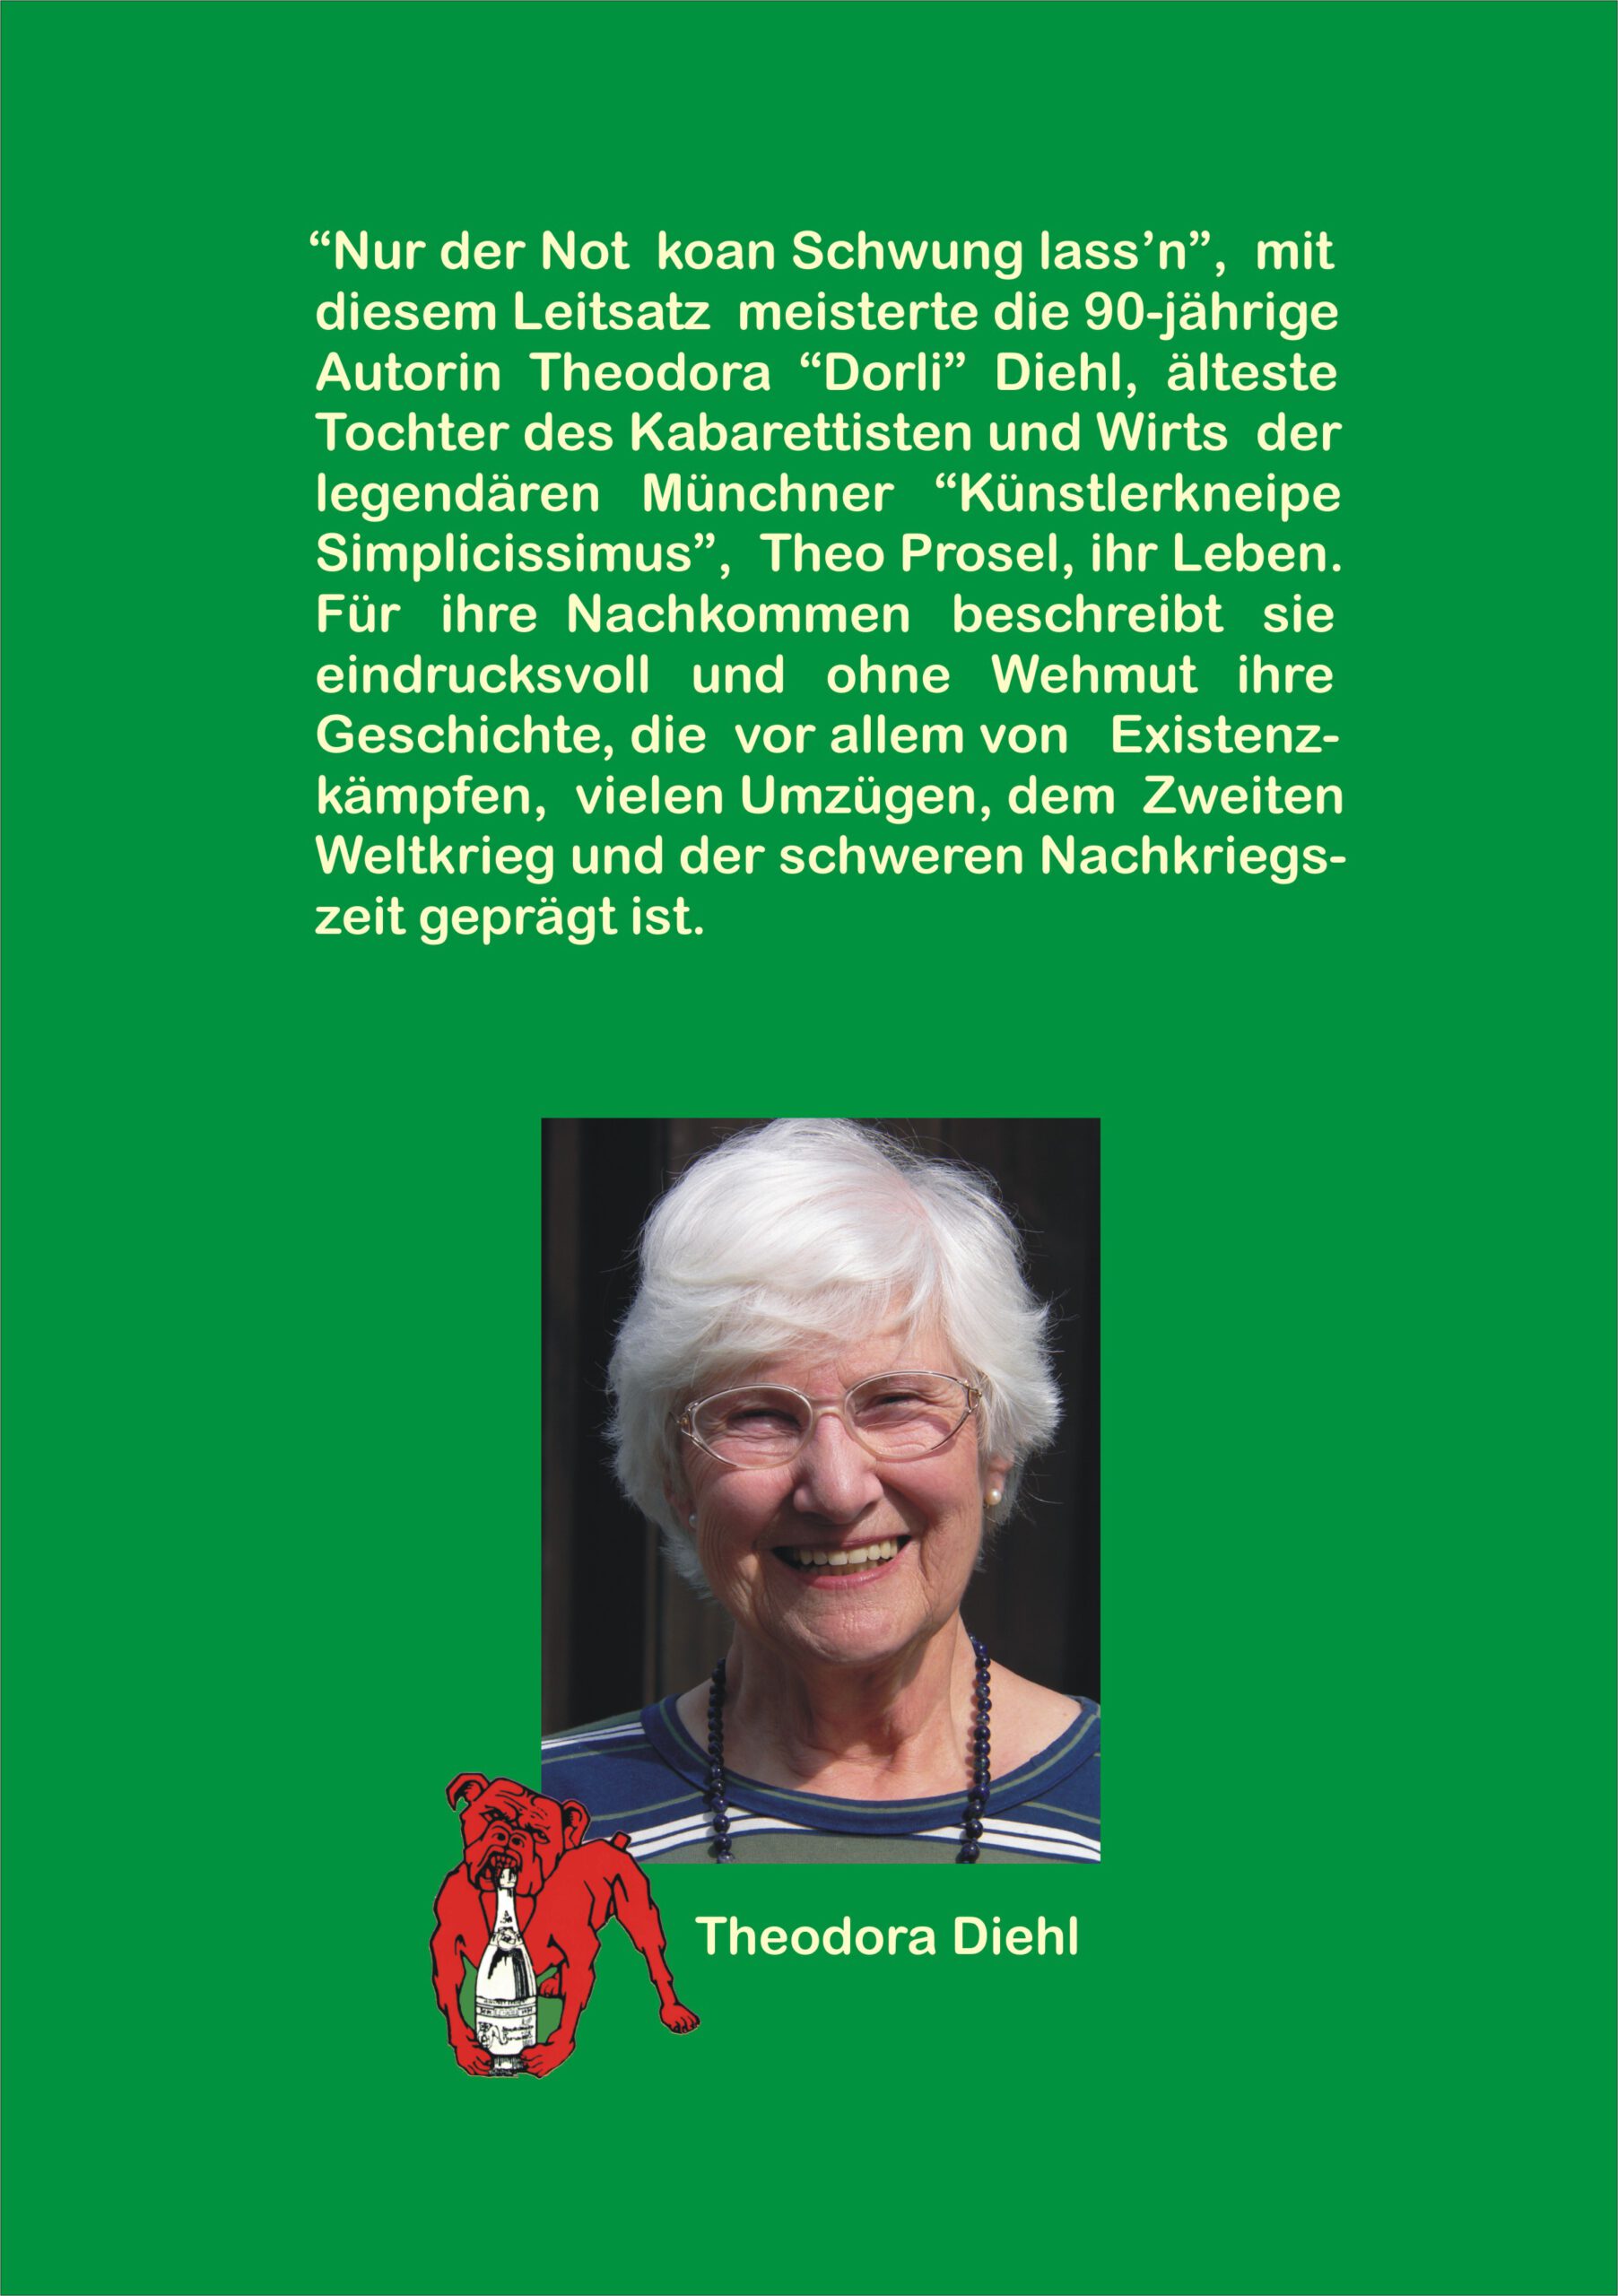 Theodora Diehl: Buch "Nur der Not koan Schwung lass'n" Cover Rückseite